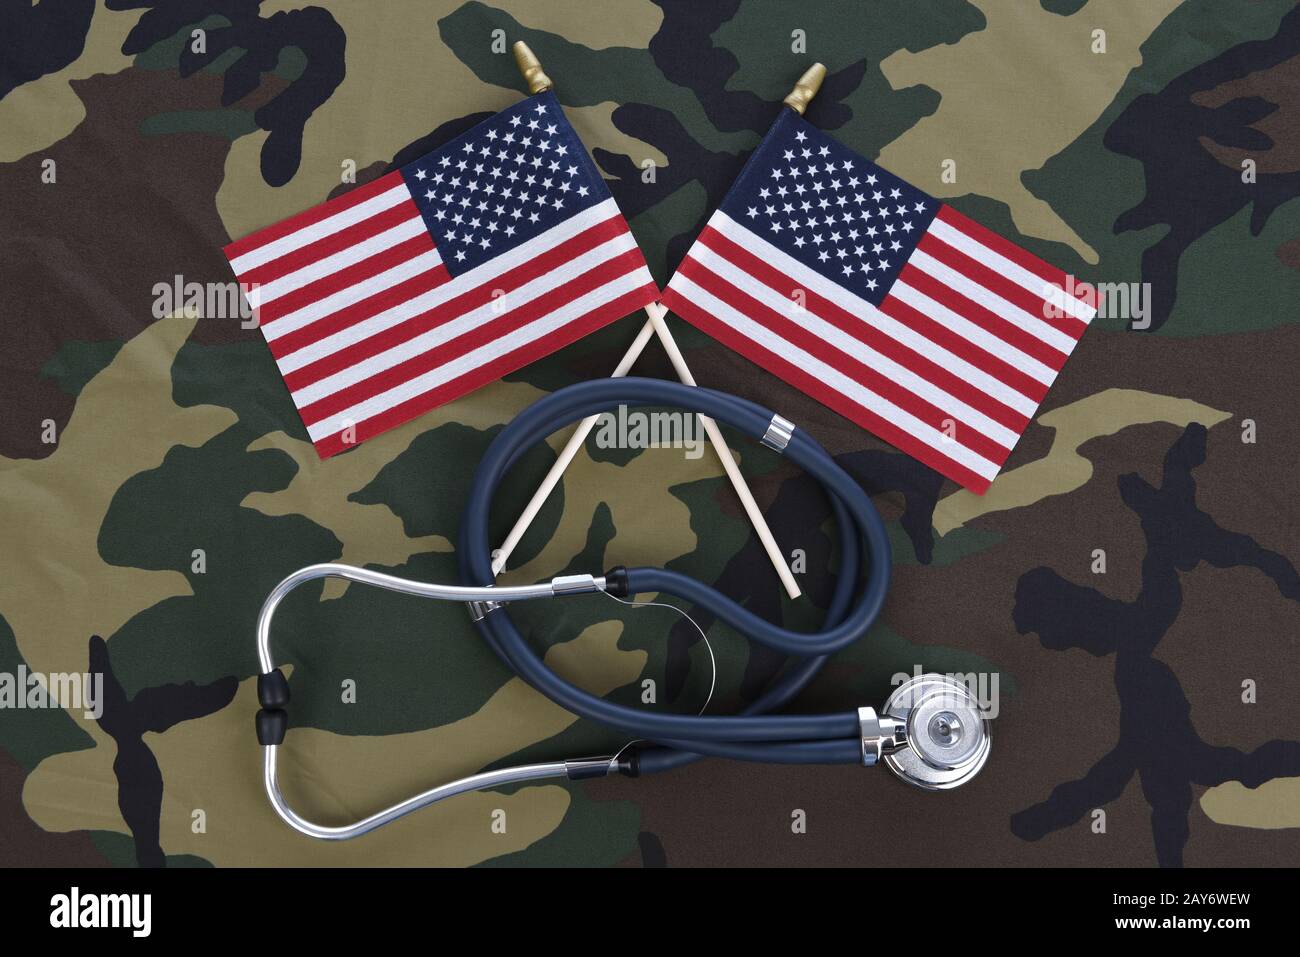 Concept De Soins De Santé Militaires. Fond de camouflage avec stéthoscope et deux drapeaux américains croisés. Banque D'Images